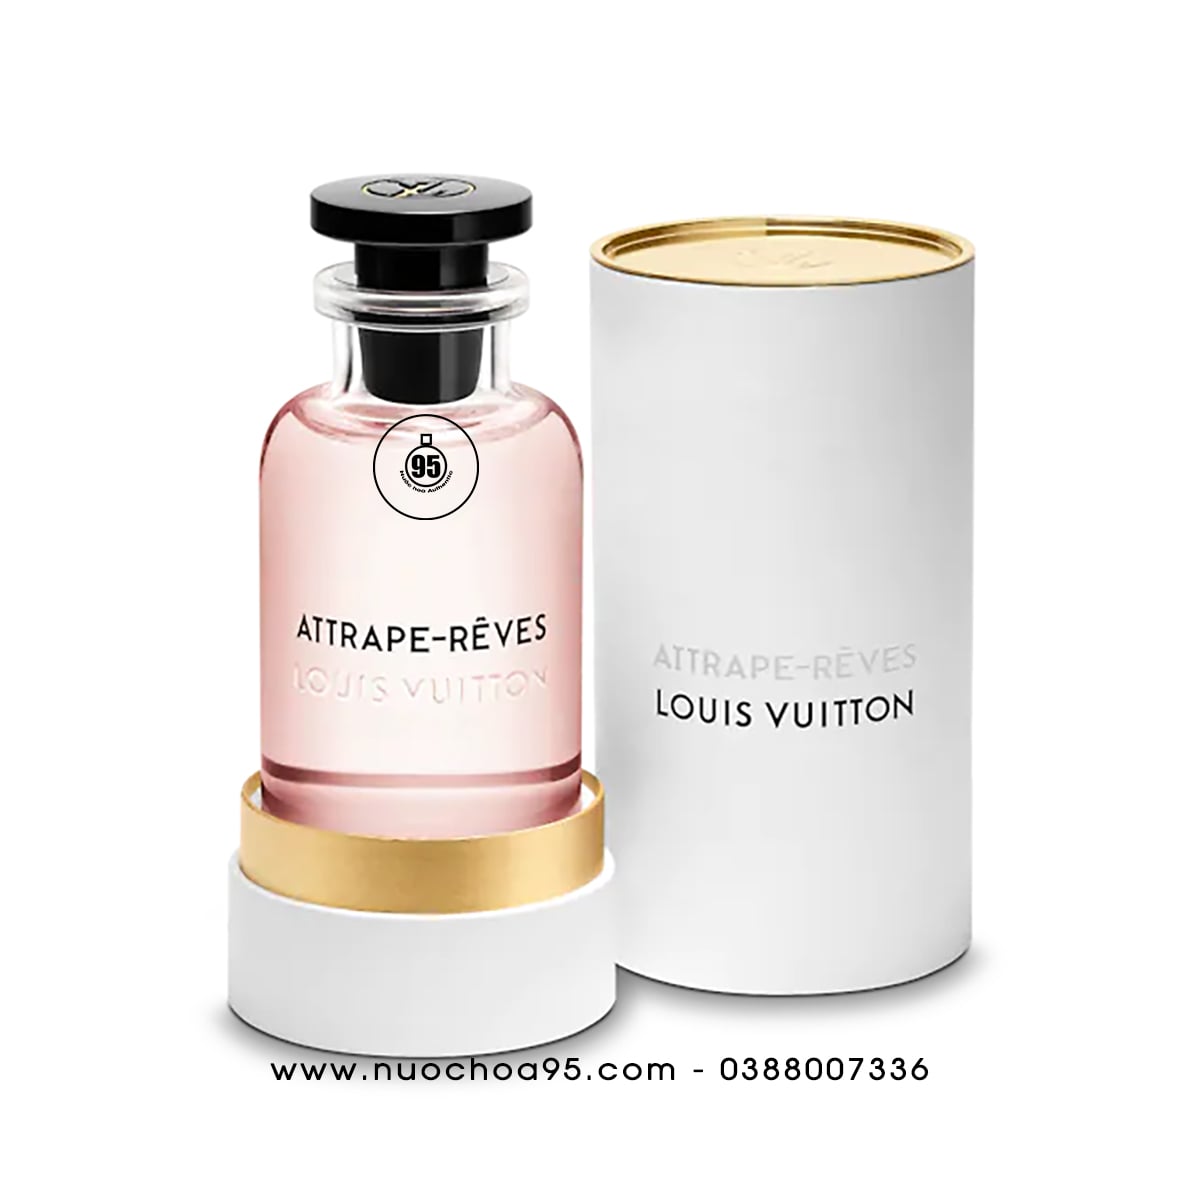 Nước hoa Louis Vuitton Attrape-Reves